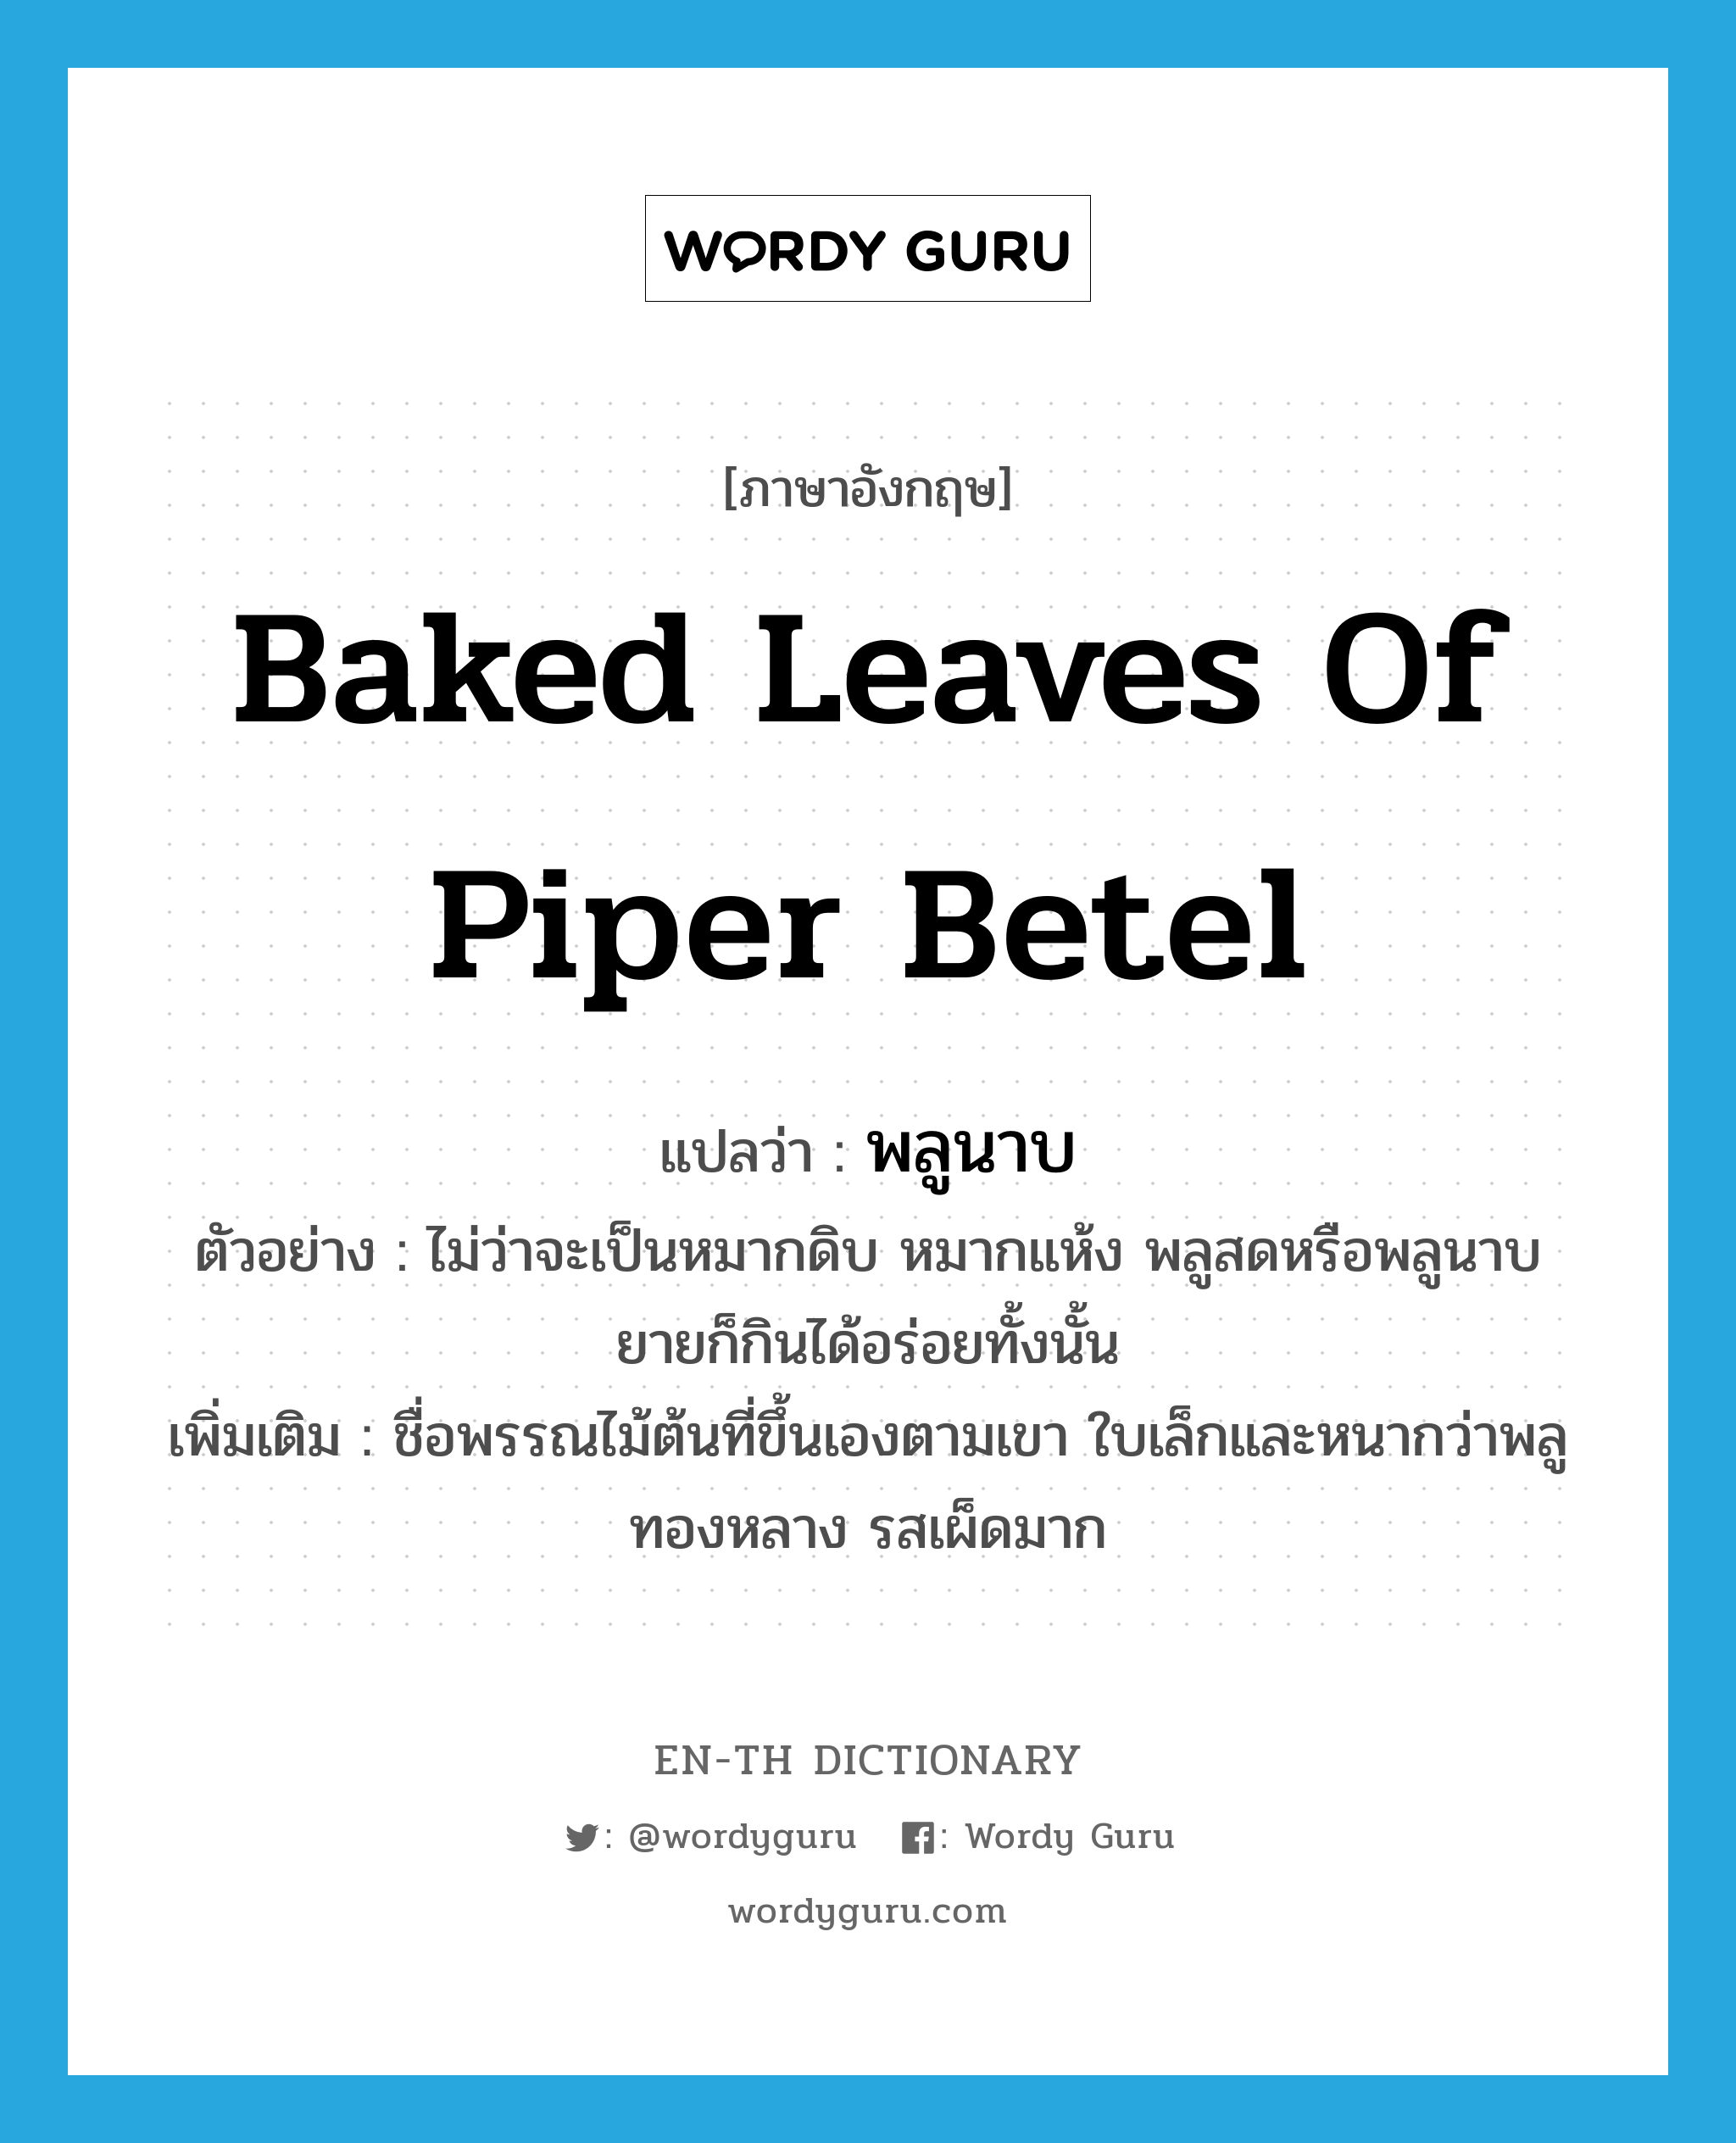 baked leaves of Piper betel แปลว่า?, คำศัพท์ภาษาอังกฤษ baked leaves of Piper betel แปลว่า พลูนาบ ประเภท N ตัวอย่าง ไม่ว่าจะเป็นหมากดิบ หมากแห้ง พลูสดหรือพลูนาบ ยายก็กินได้อร่อยทั้งนั้น เพิ่มเติม ชื่อพรรณไม้ต้นที่ขึ้นเองตามเขา ใบเล็กและหนากว่าพลูทองหลาง รสเผ็ดมาก หมวด N